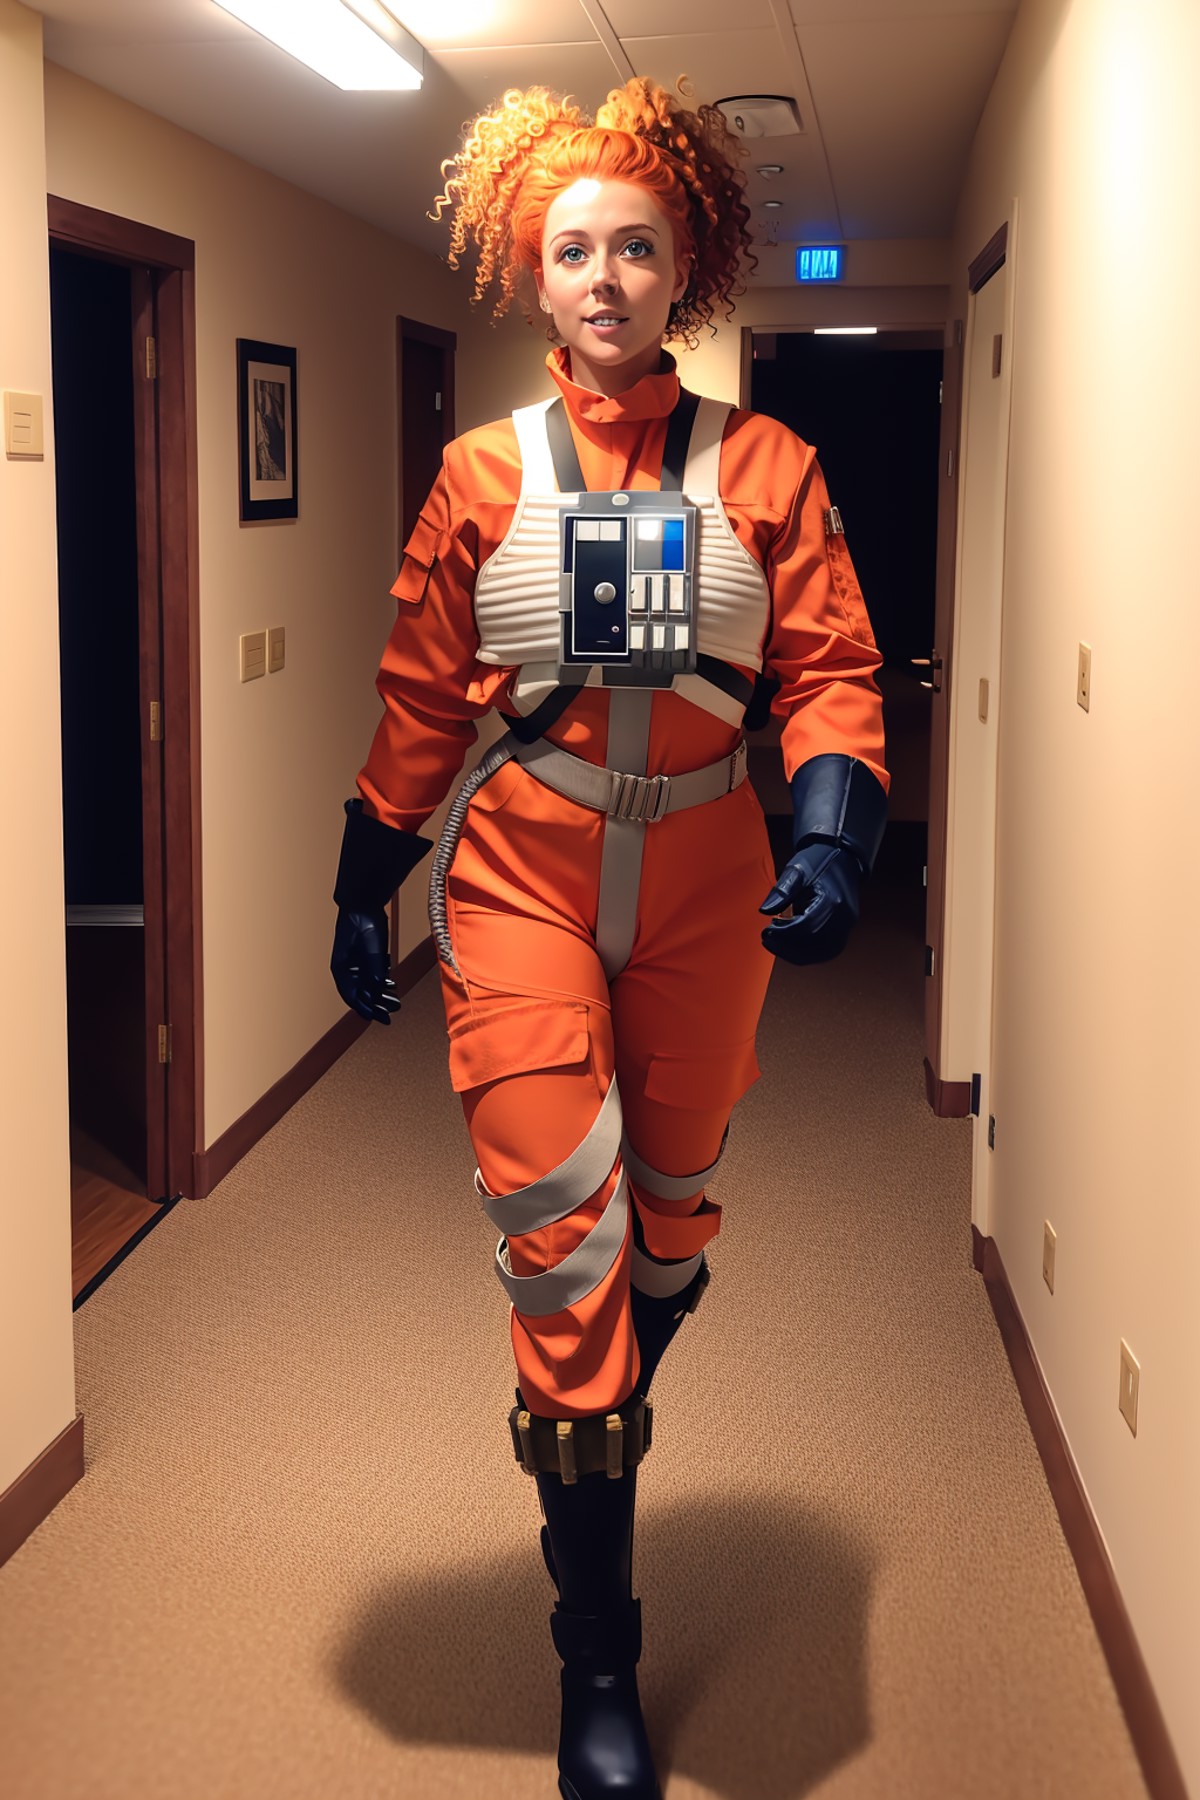 gingerwoman in rebel pilot suit,ponytail,walking,spaceship corridor,curly hair<lora:RPSV3:0.8>